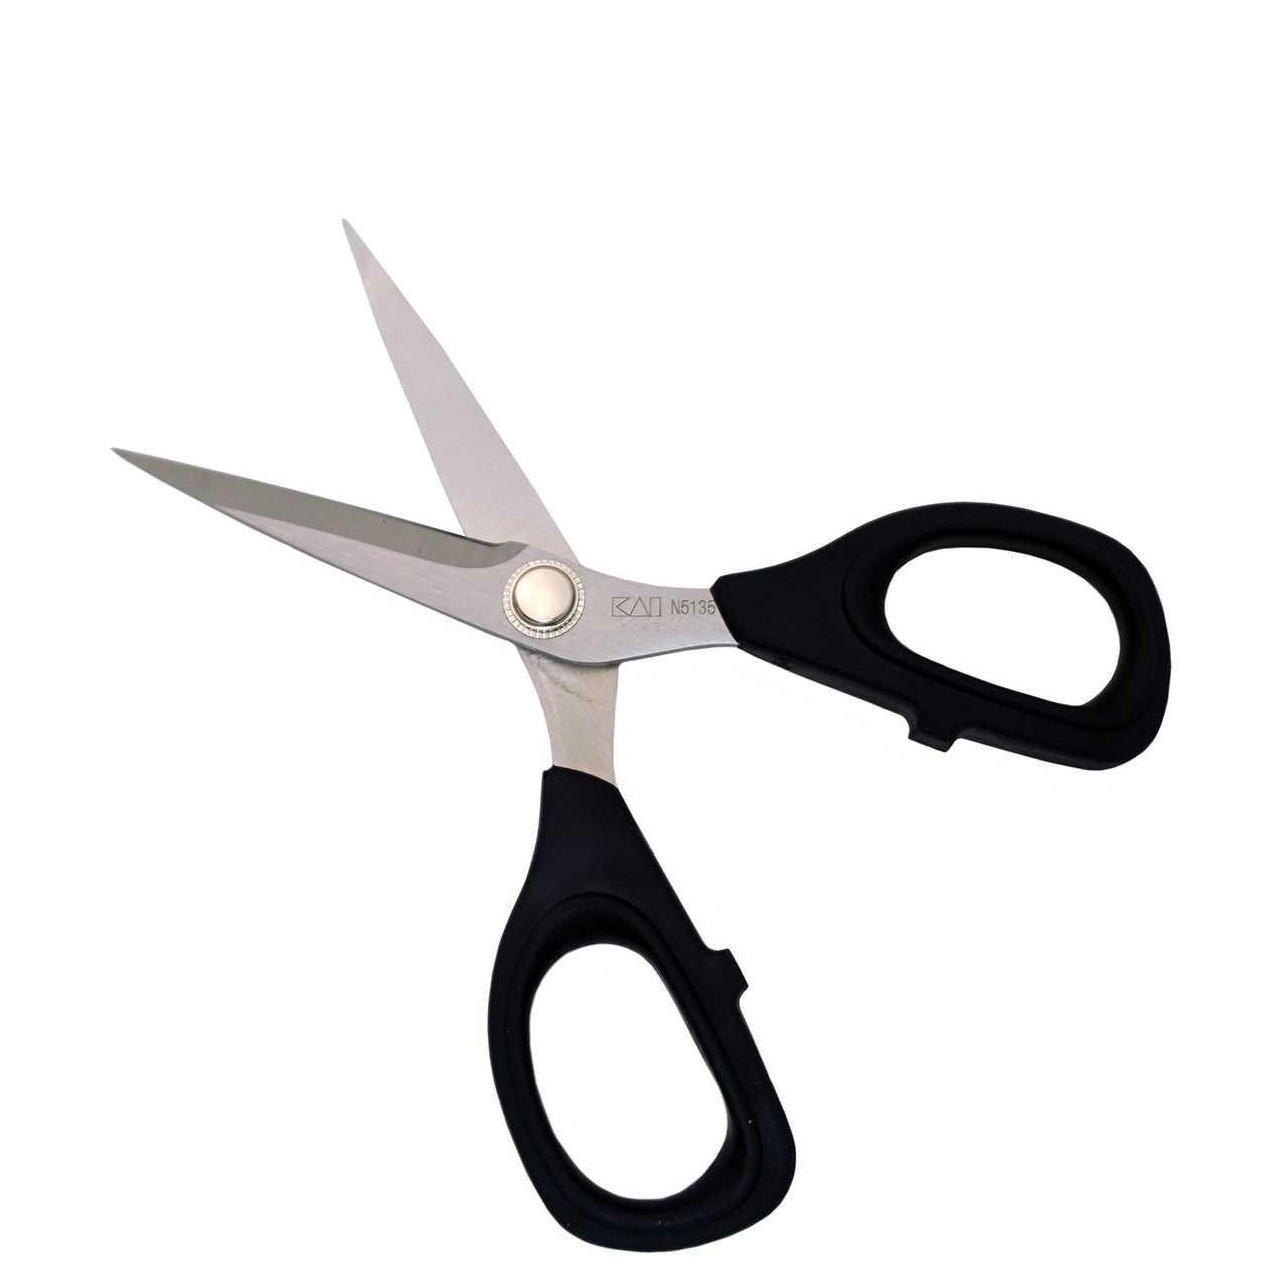 Kai 5220L 8 1/2-inch Left Handed Dressmaking Shears Scissors